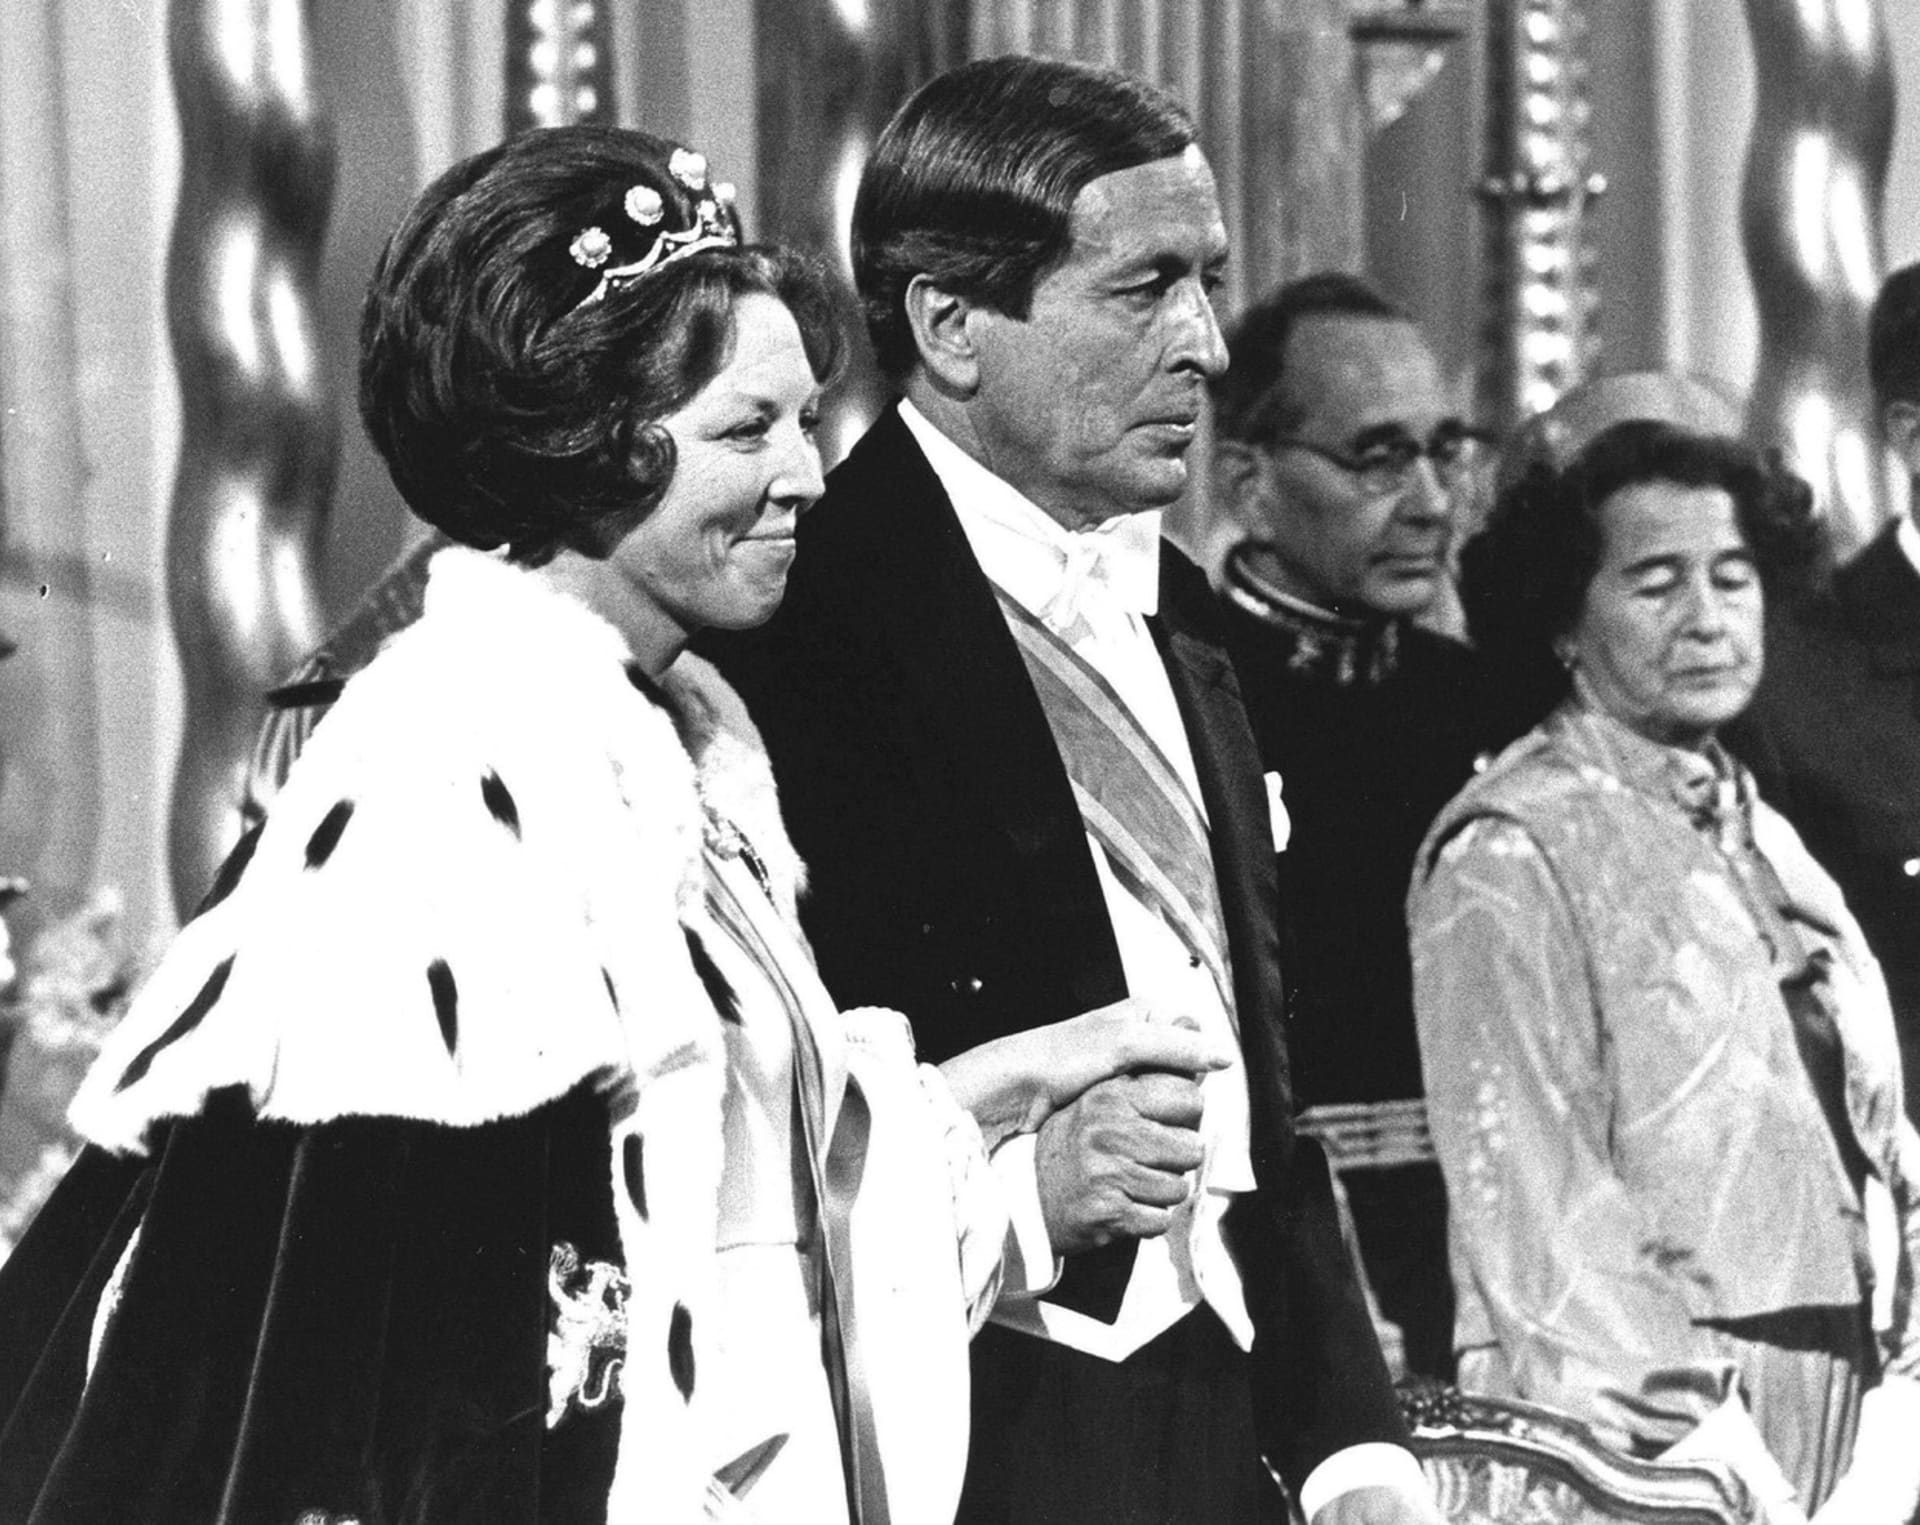 Královna Beatrix s manželem při inauguraci poté, co její matka abdikovala na nizozemský trůn (1980).